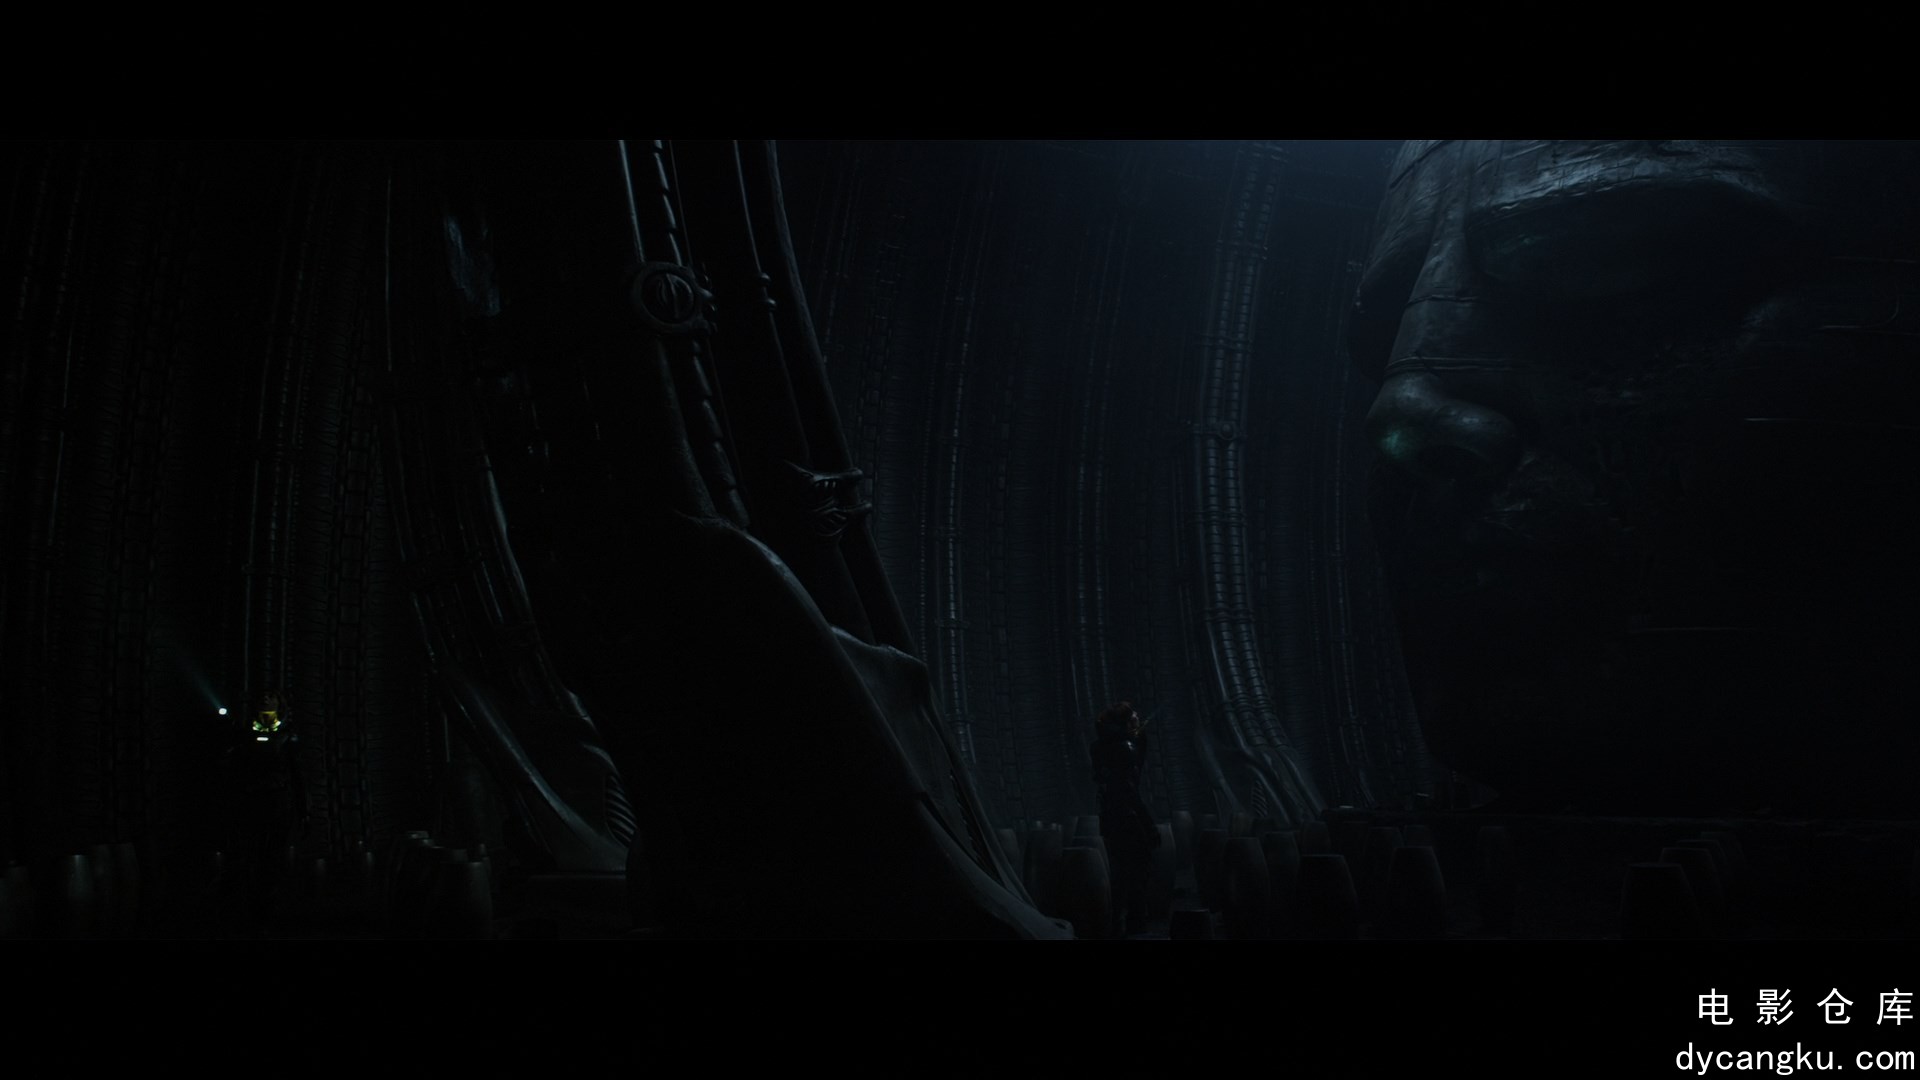 [电影仓库dycangku.com]Prometheus.2012.1080p.BluRay.x264-10bit.DTS-HDTime.mkv_sna.jpg